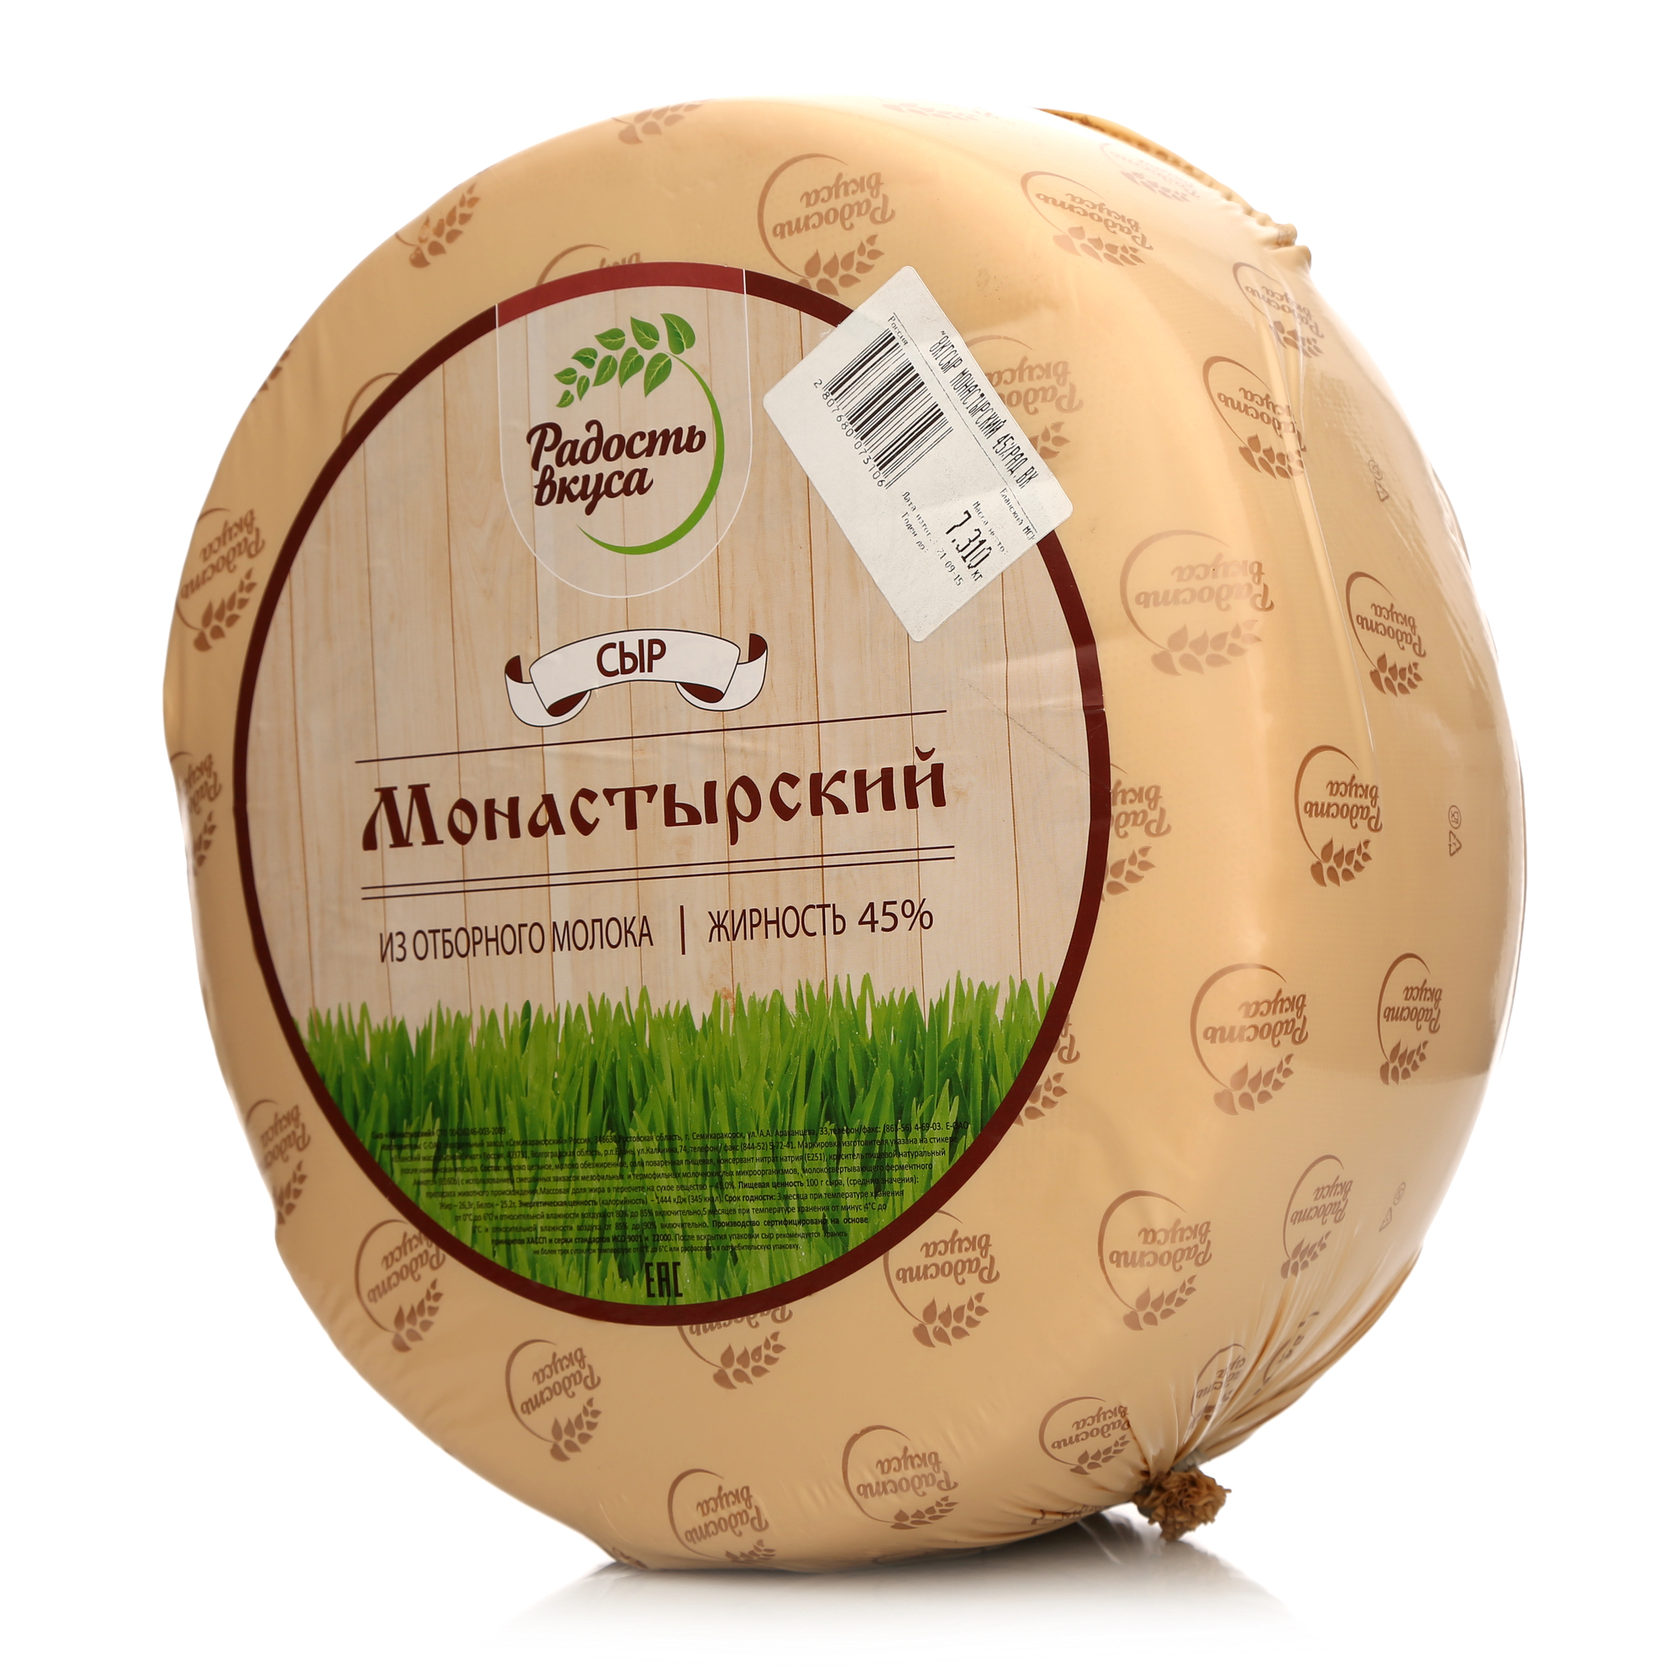 Где В Омске Купить Сыр